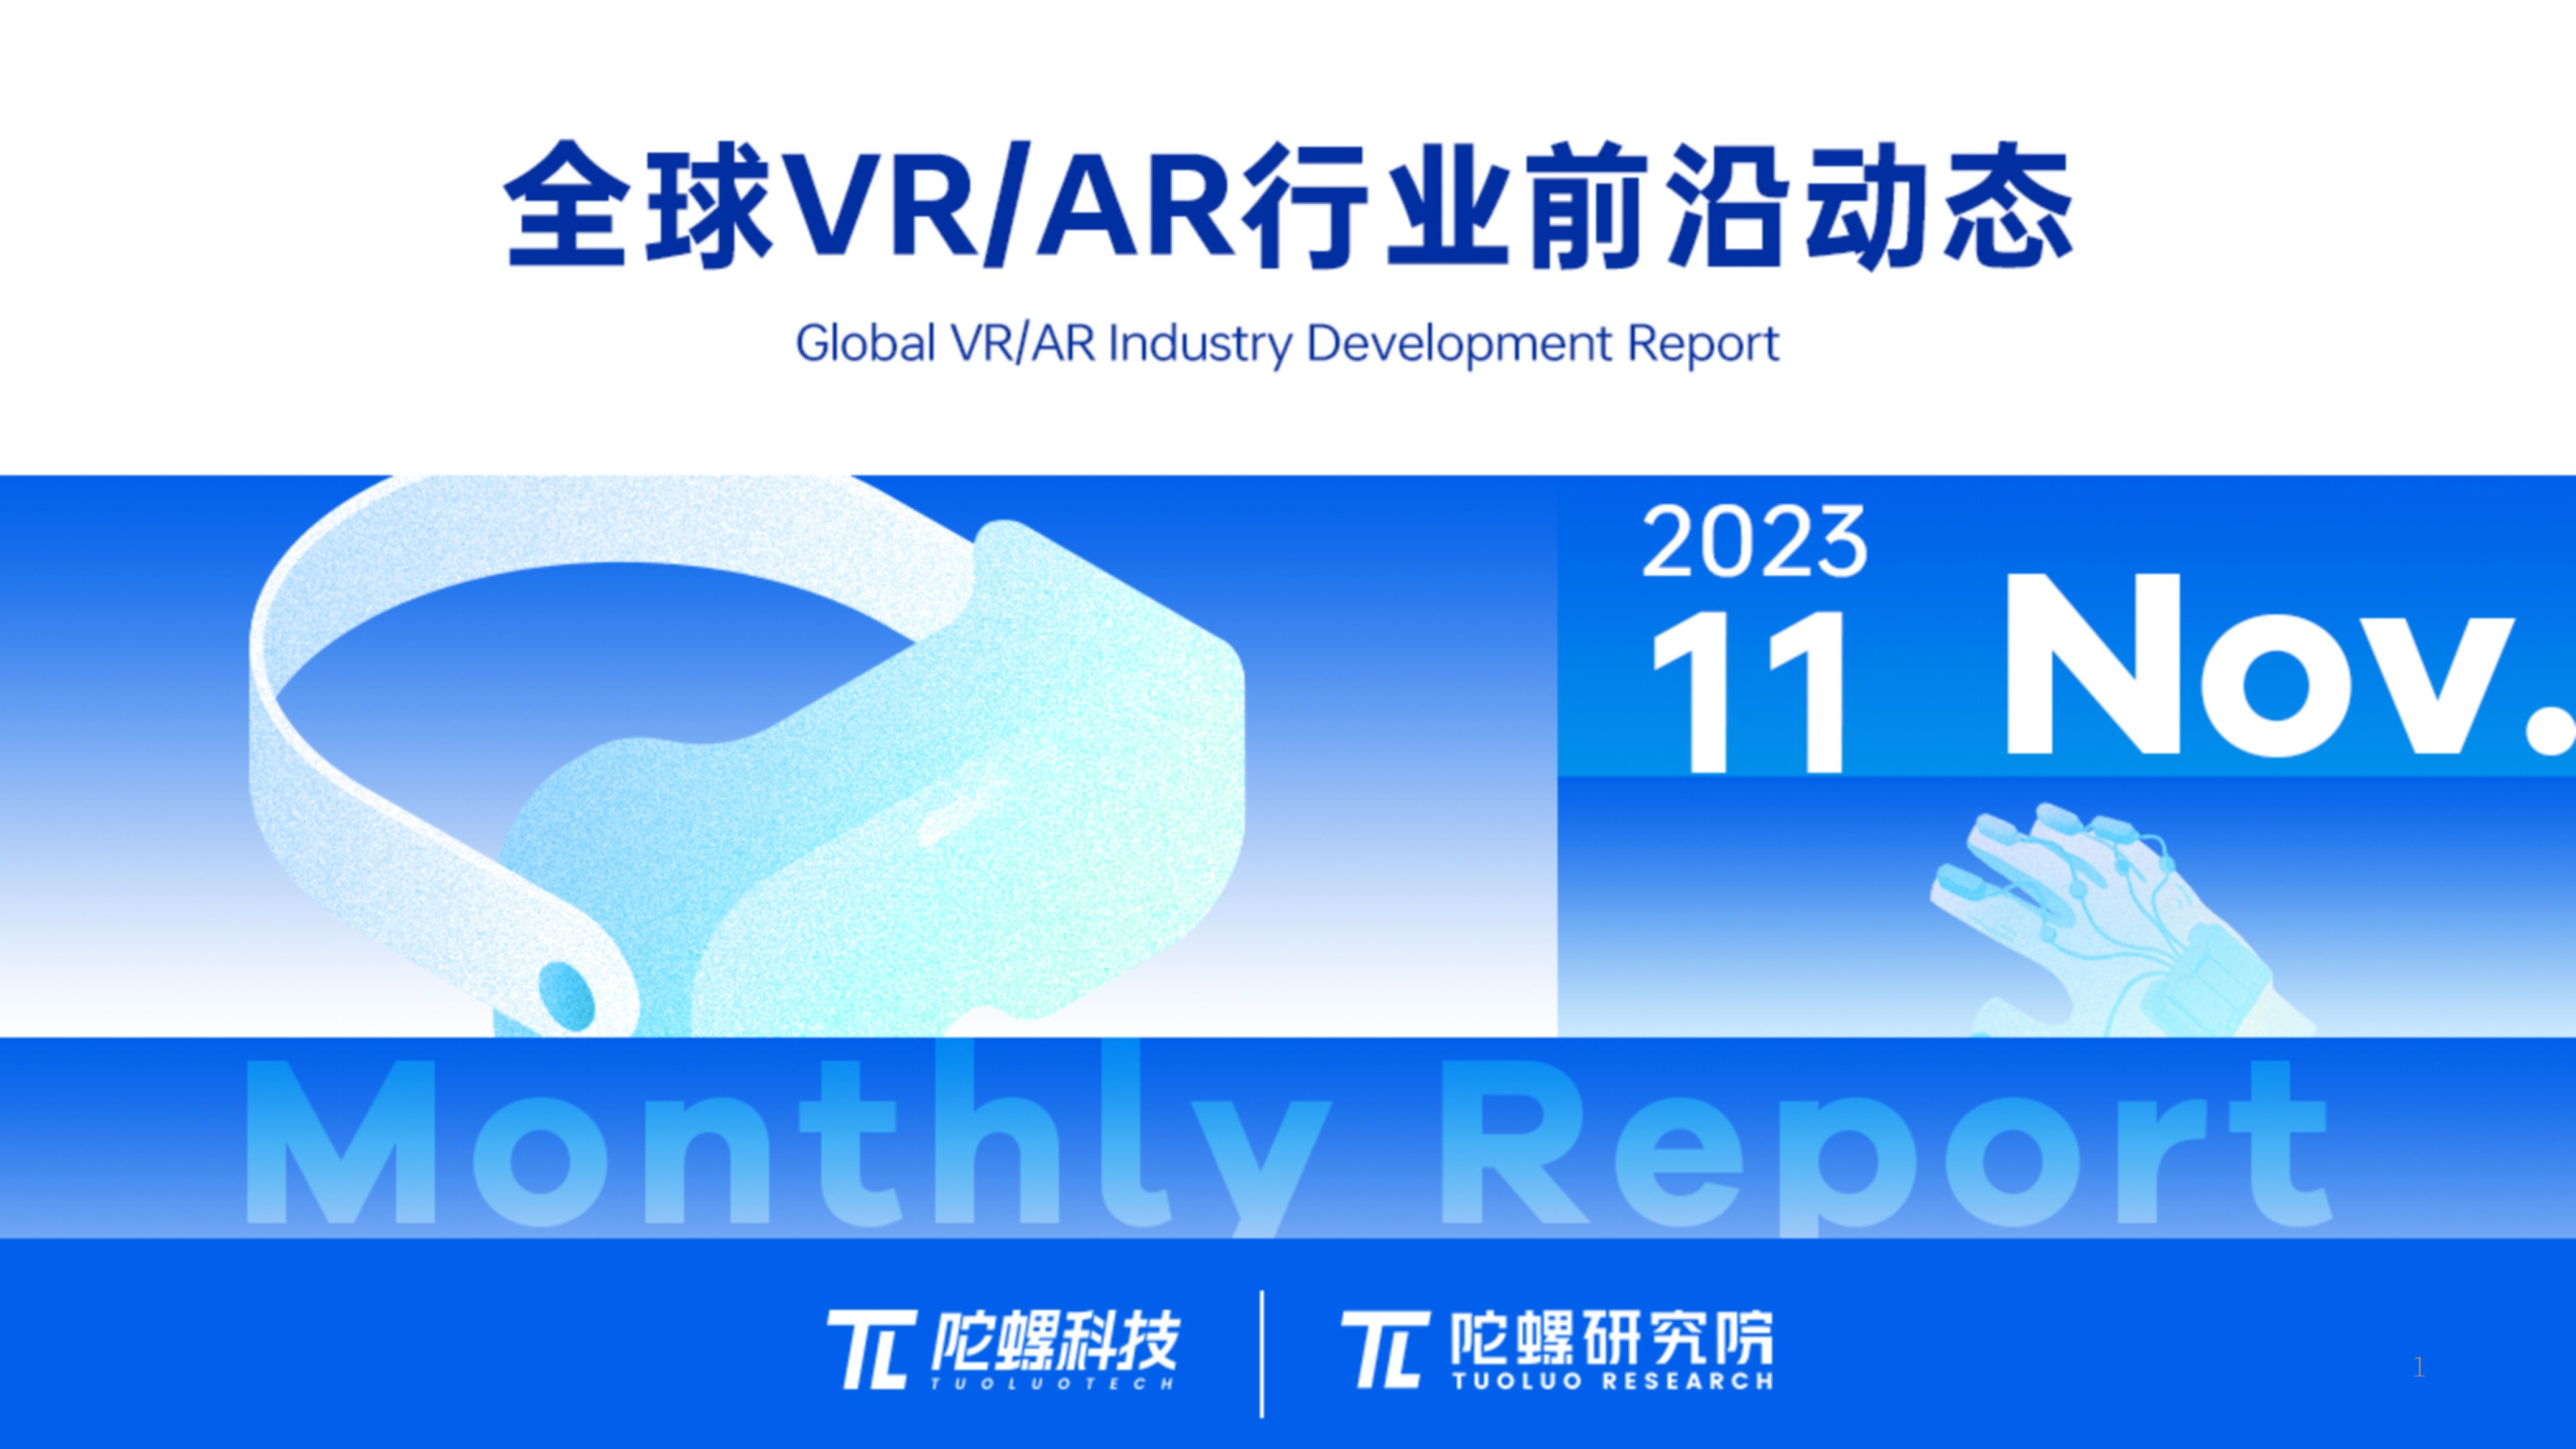 2023年11月VR/AR行业月报 | VR陀螺